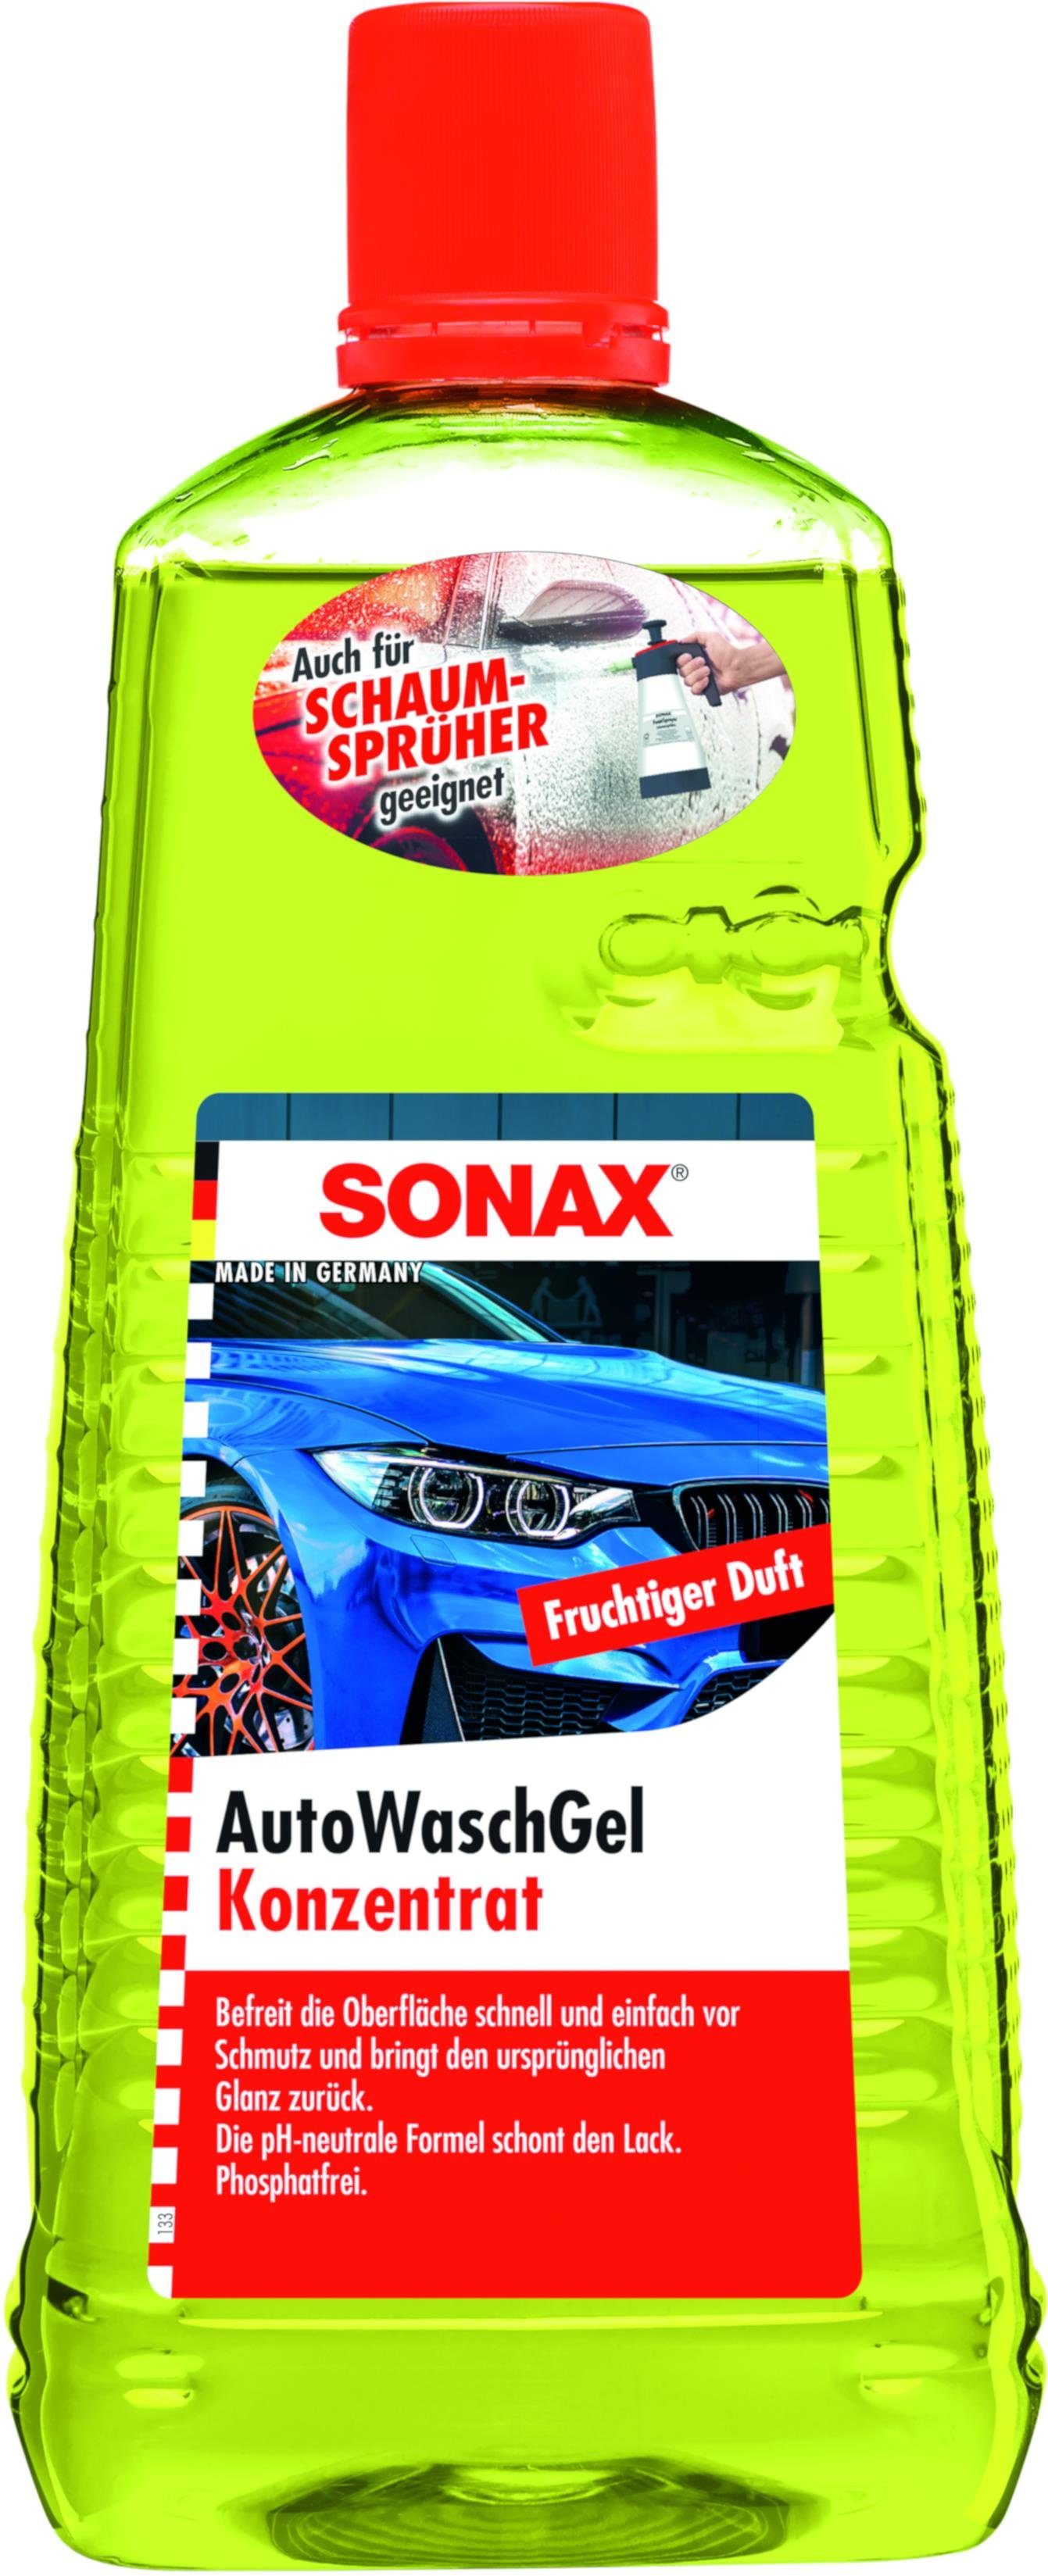 Sonax SONAX AutoWaschGel Konzentrat 2 L Lackpolitur